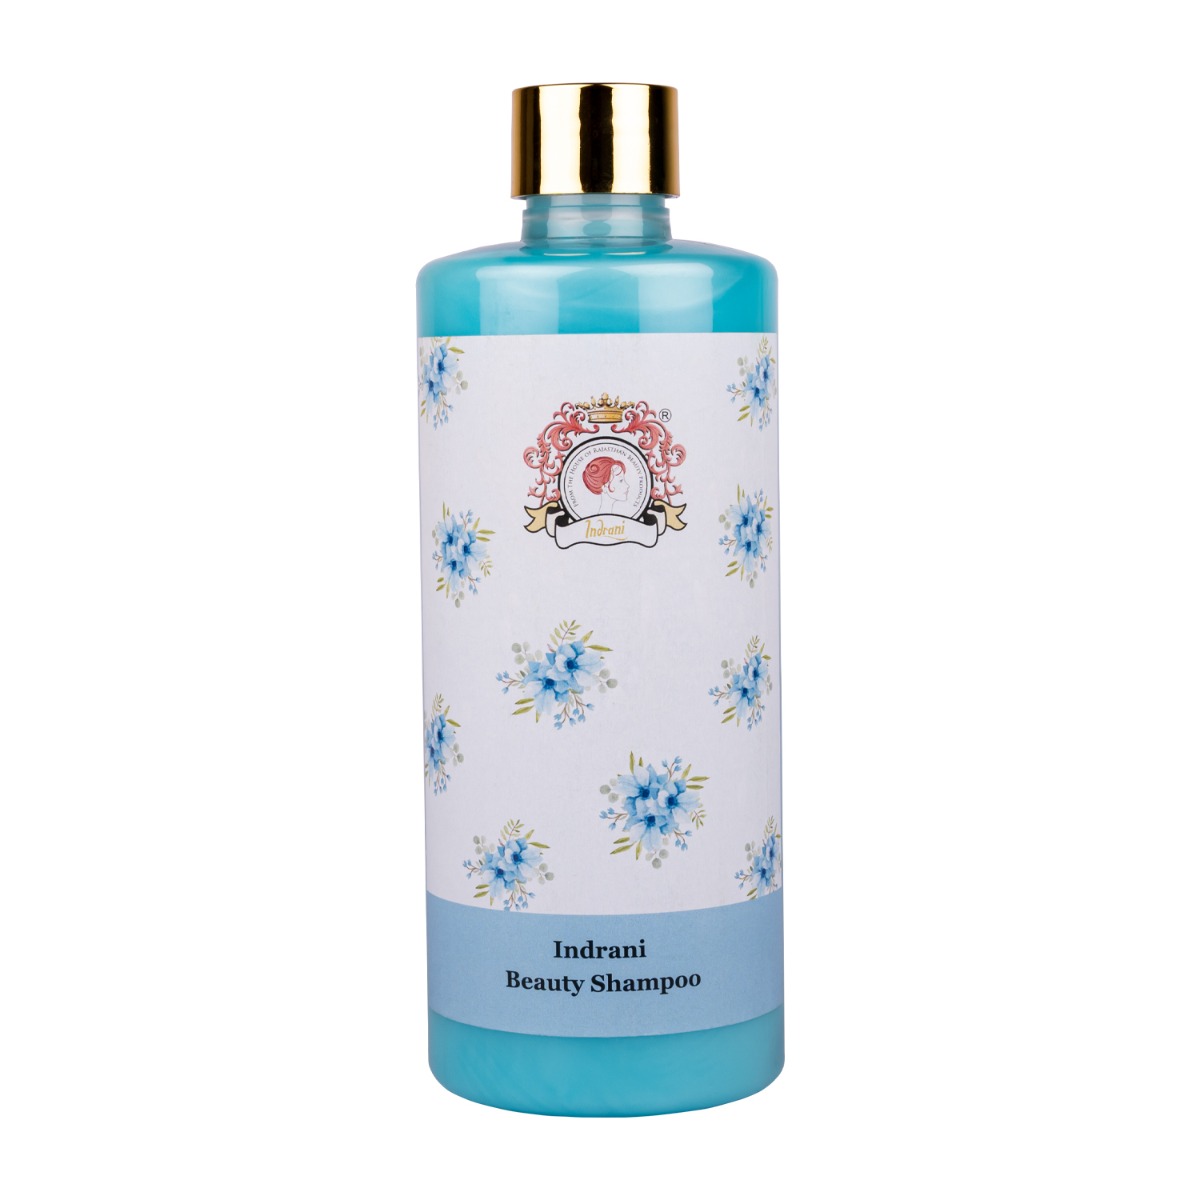 Indrani Beauty Shampoo, 500ml